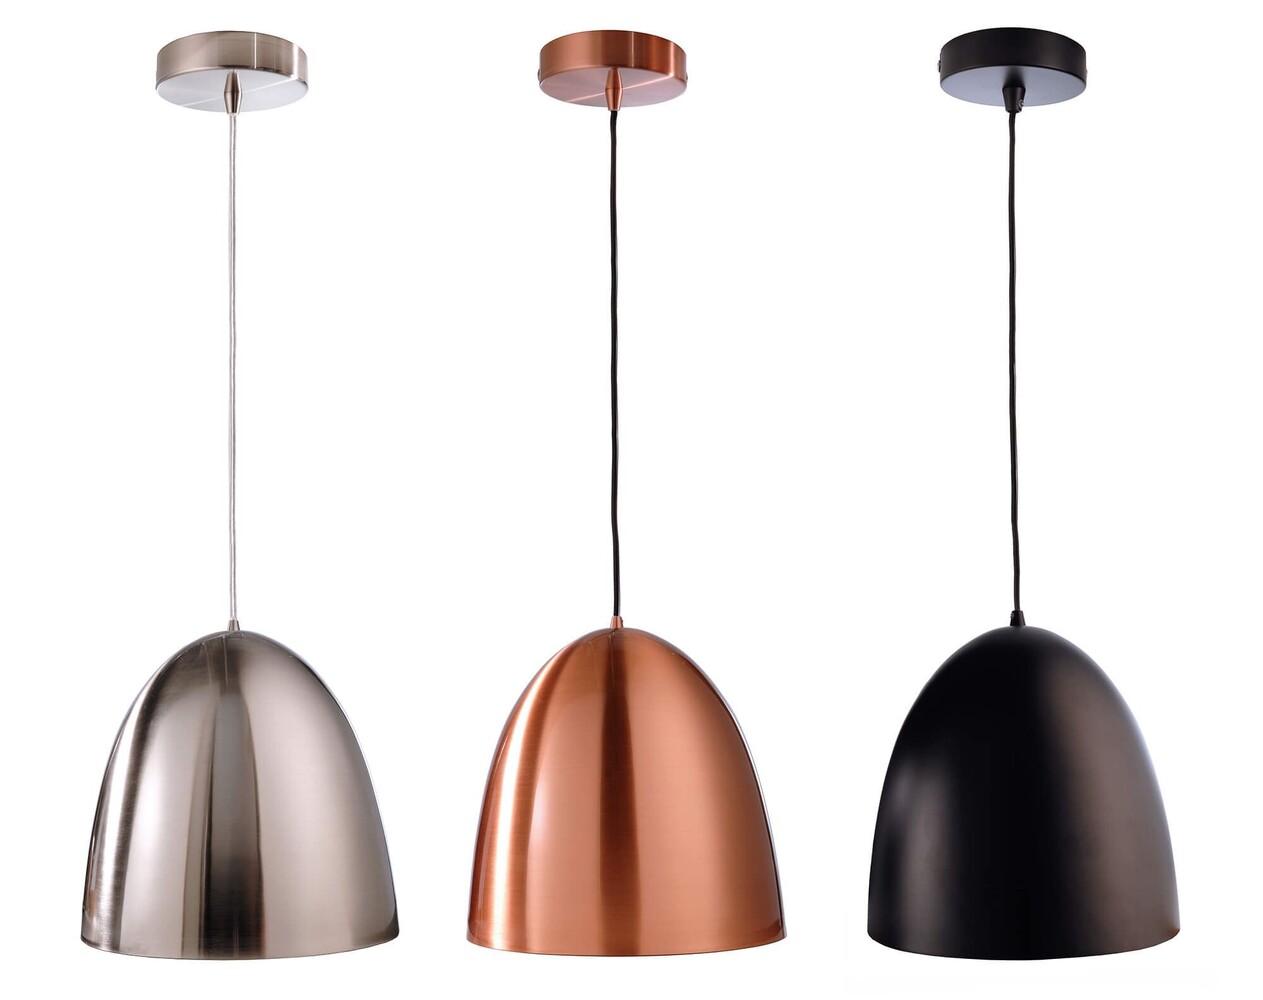 Pendelleuchte Bell von LED Universum, moderne und stilvolle Dekoration für jeden Raum